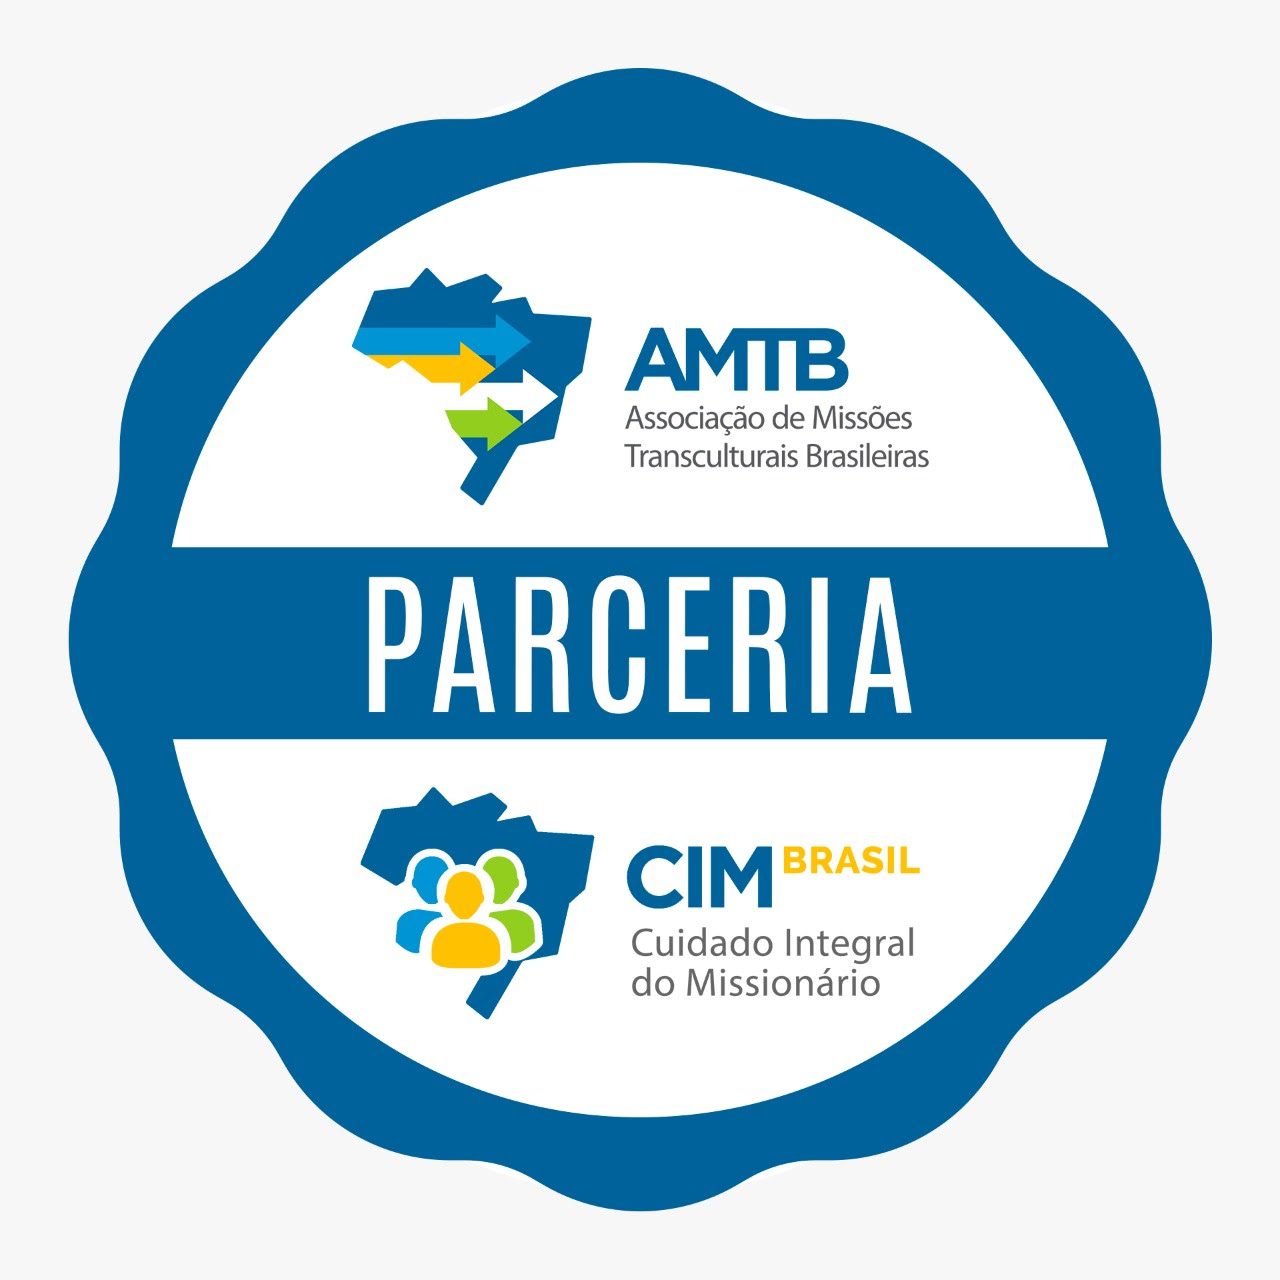 AMTB CIM Brasil